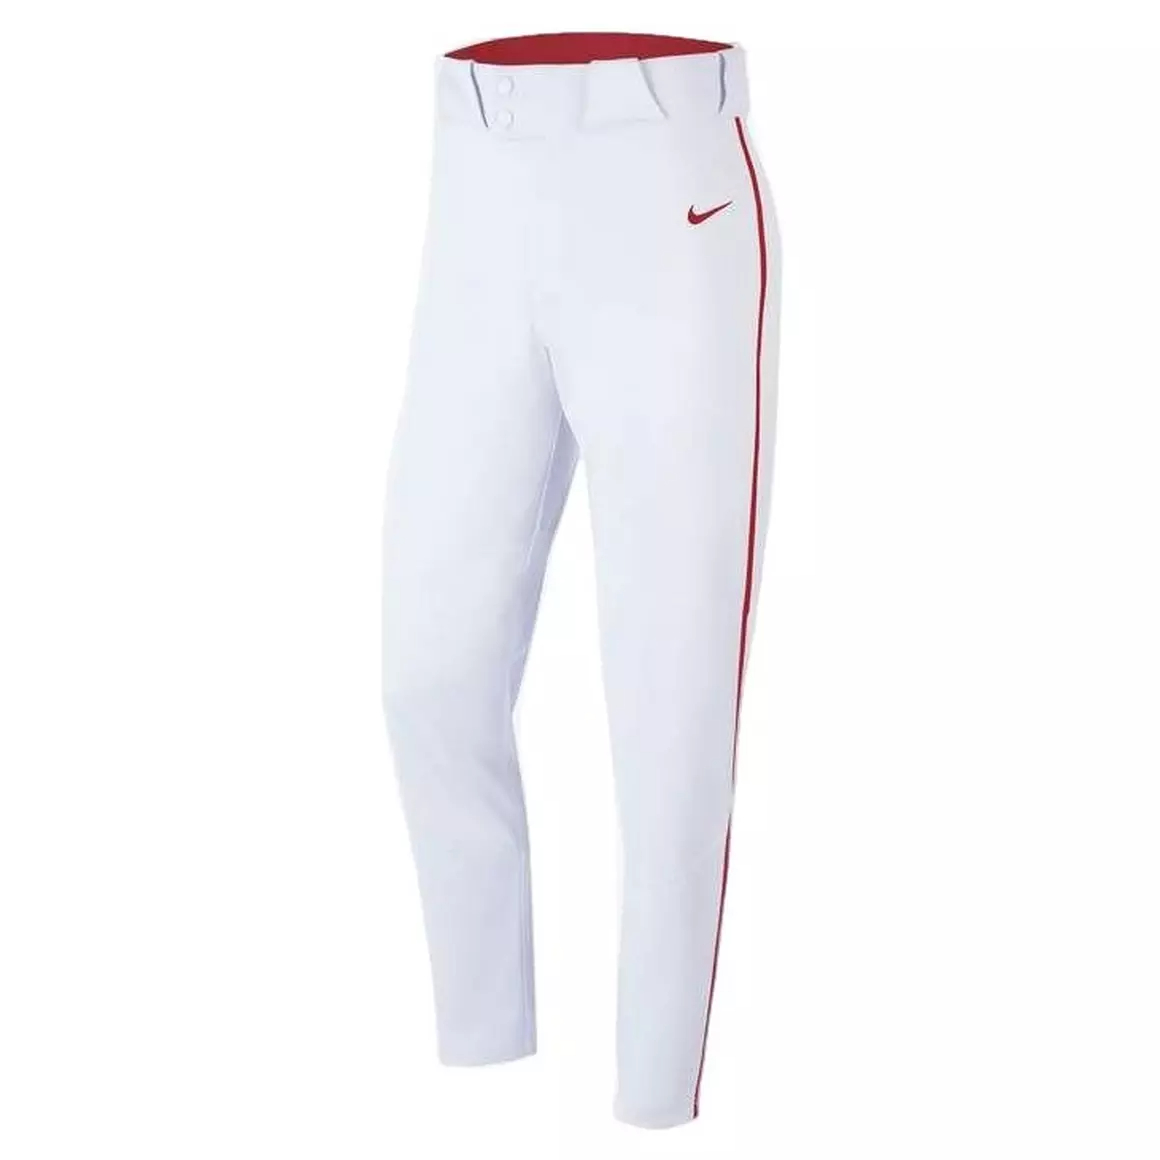 Nike Men's Vapor White Long pants w/RED piping